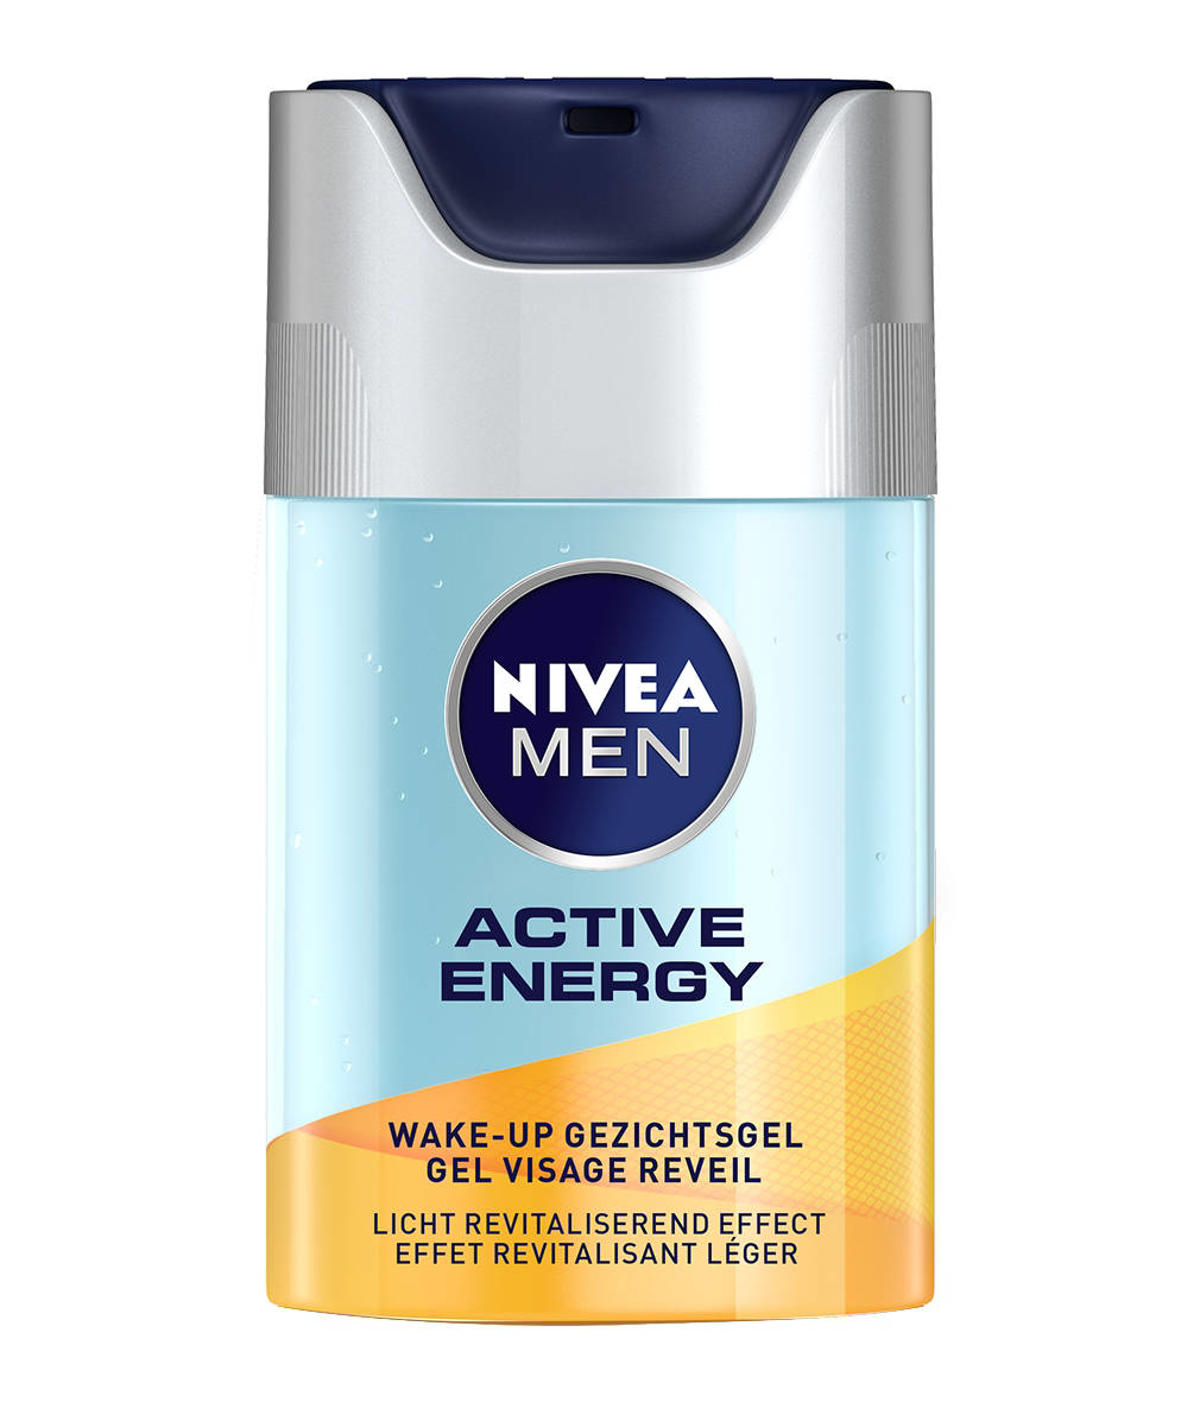 Elektropositief kijken Tenen NIVEA MEN active energy wake-up gezichtsgel - 50 ml | wehkamp